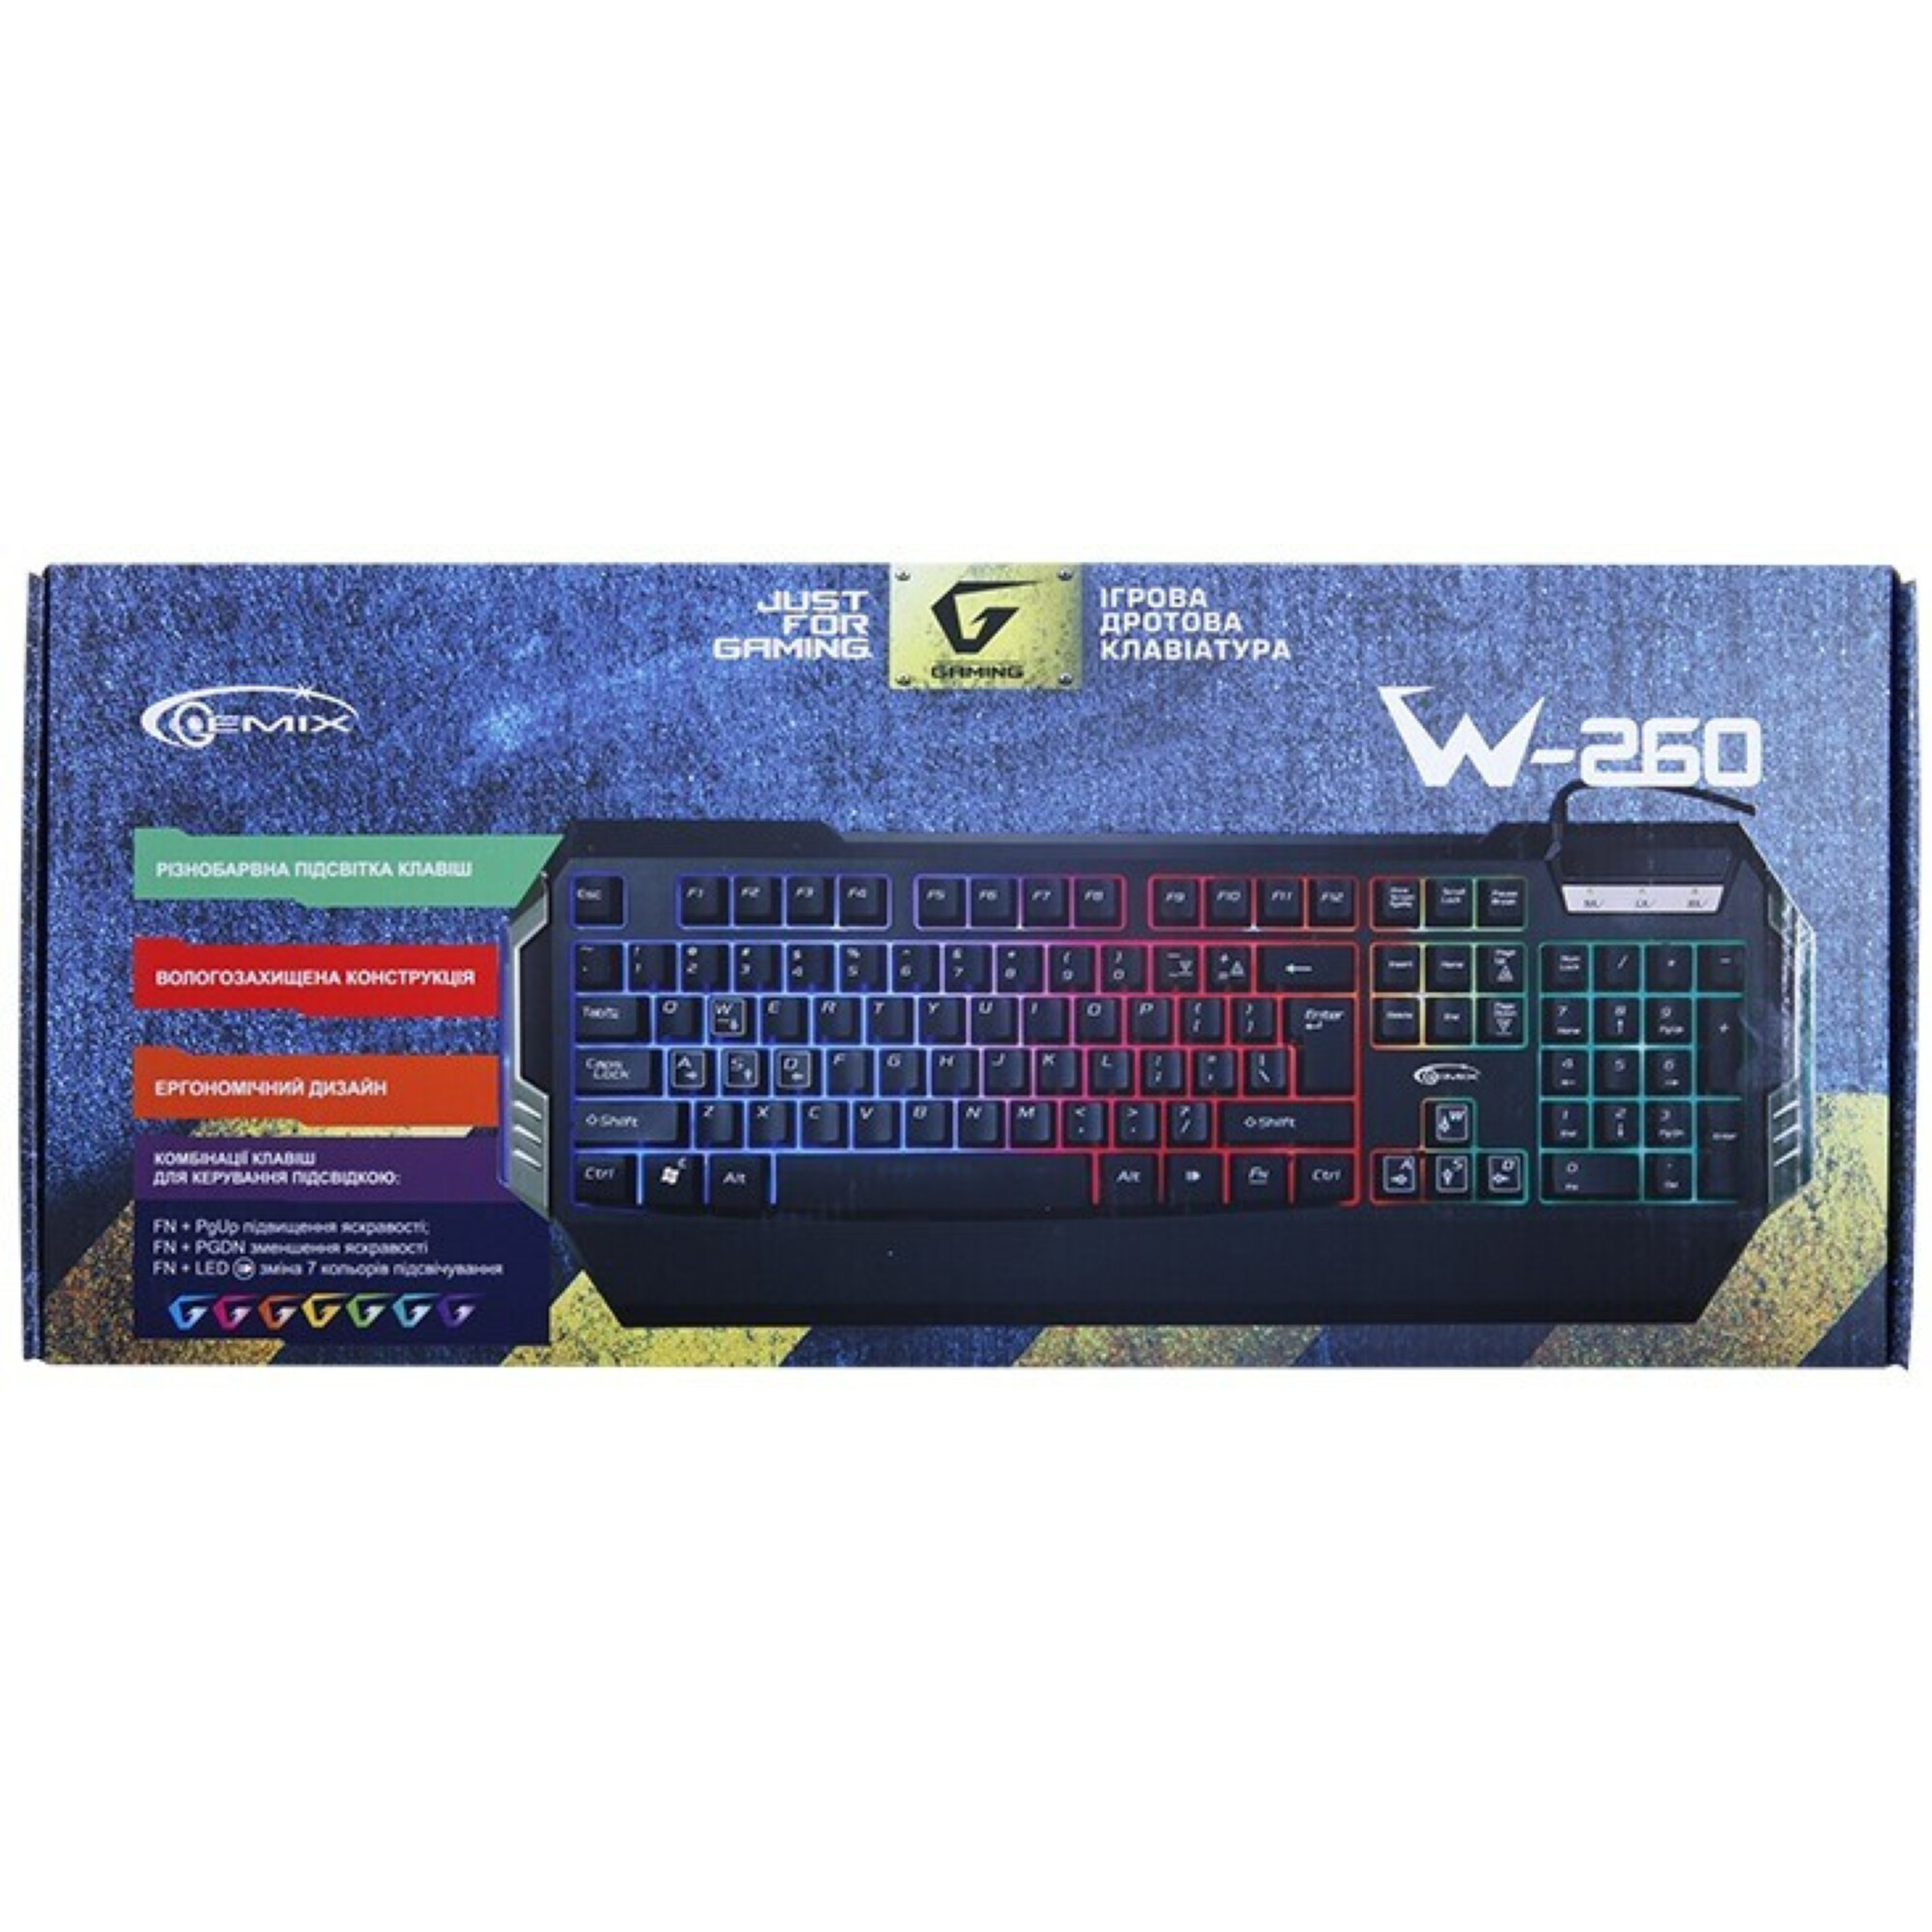 Клавиатура Gemix W-260 Black (04000033) купить в Киеве ☛ цены на ...